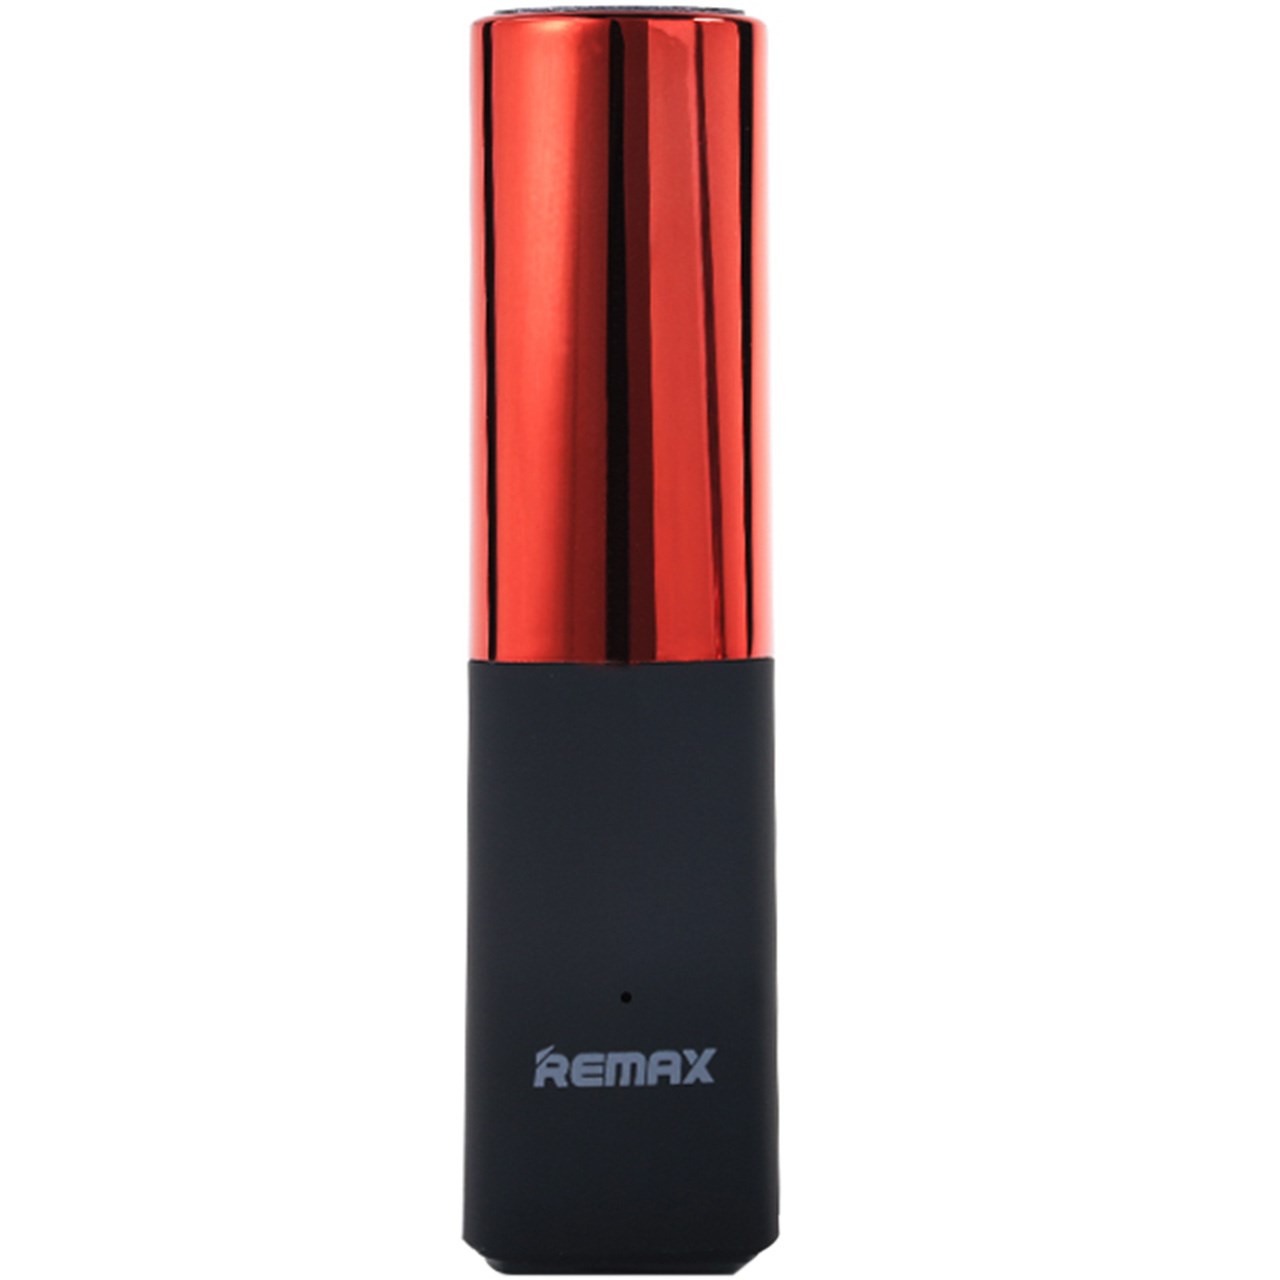 شارژر همراه ریمکس مدل Lipmax RPL-12 با ظرفیت 2400 میلی آمپر ساعت